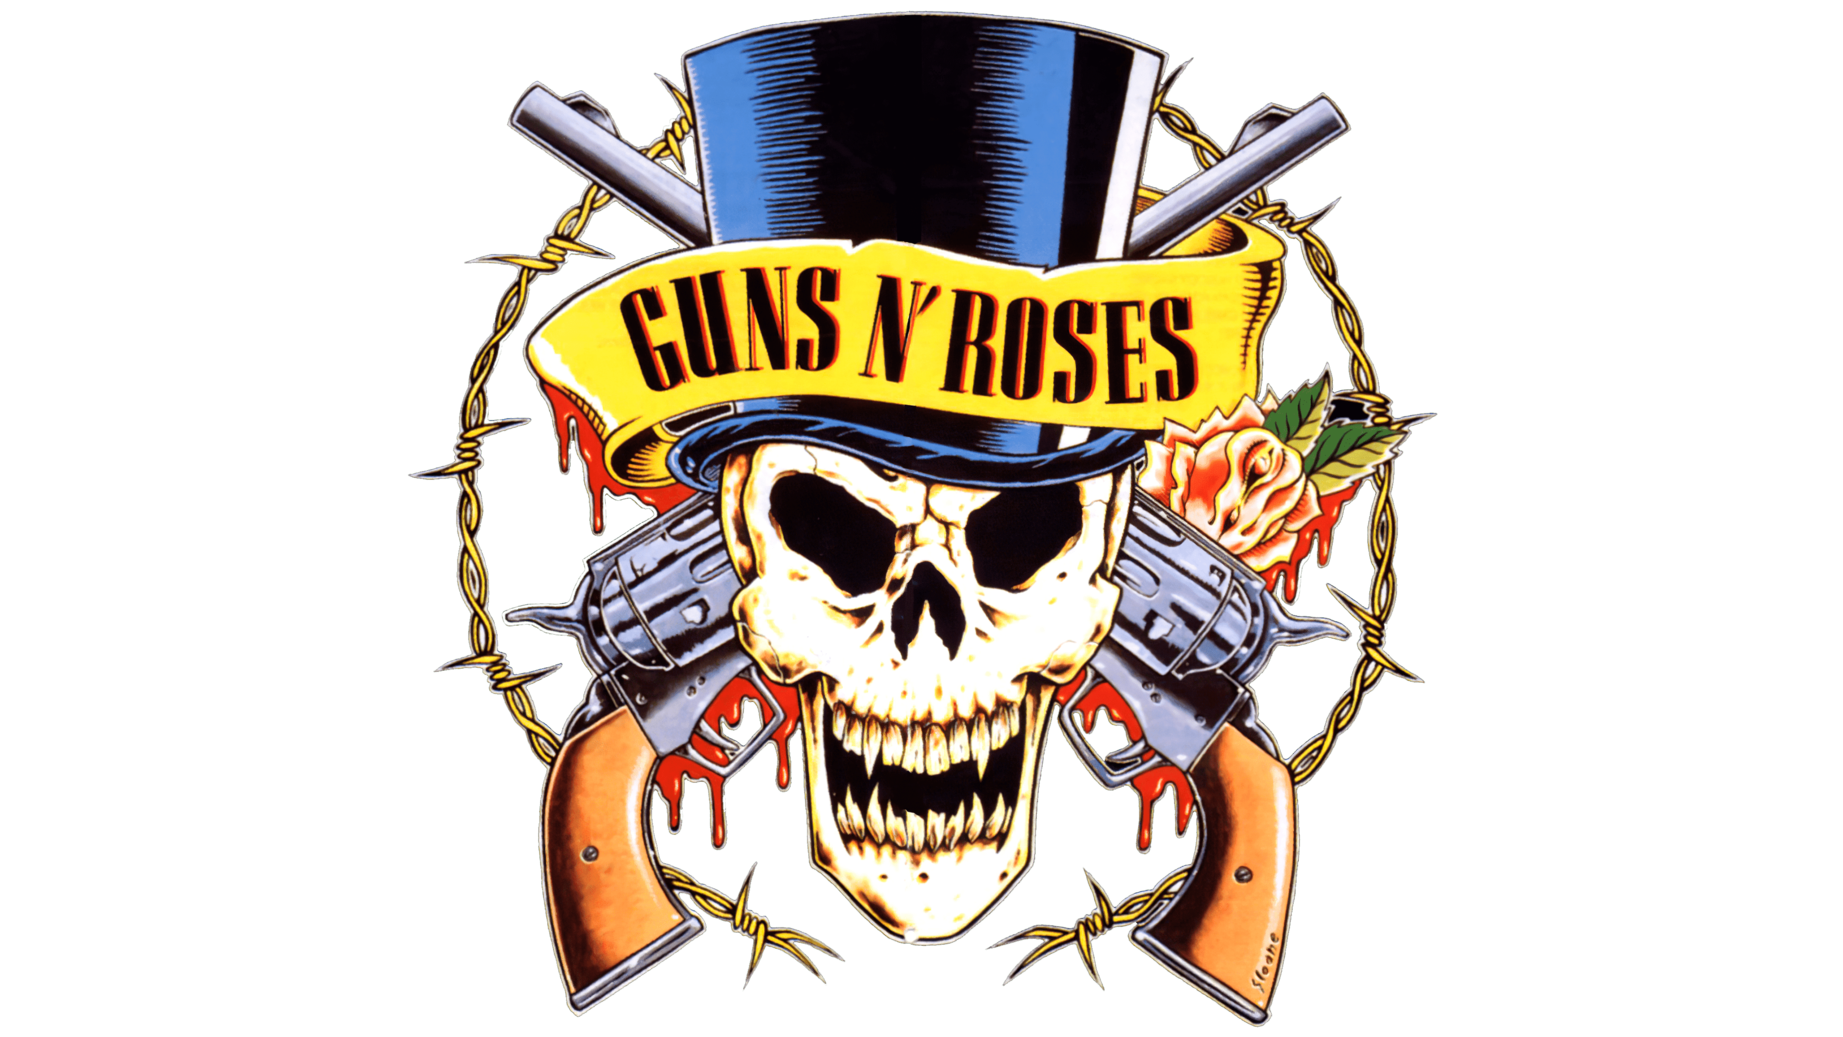 Guns n roses symbol